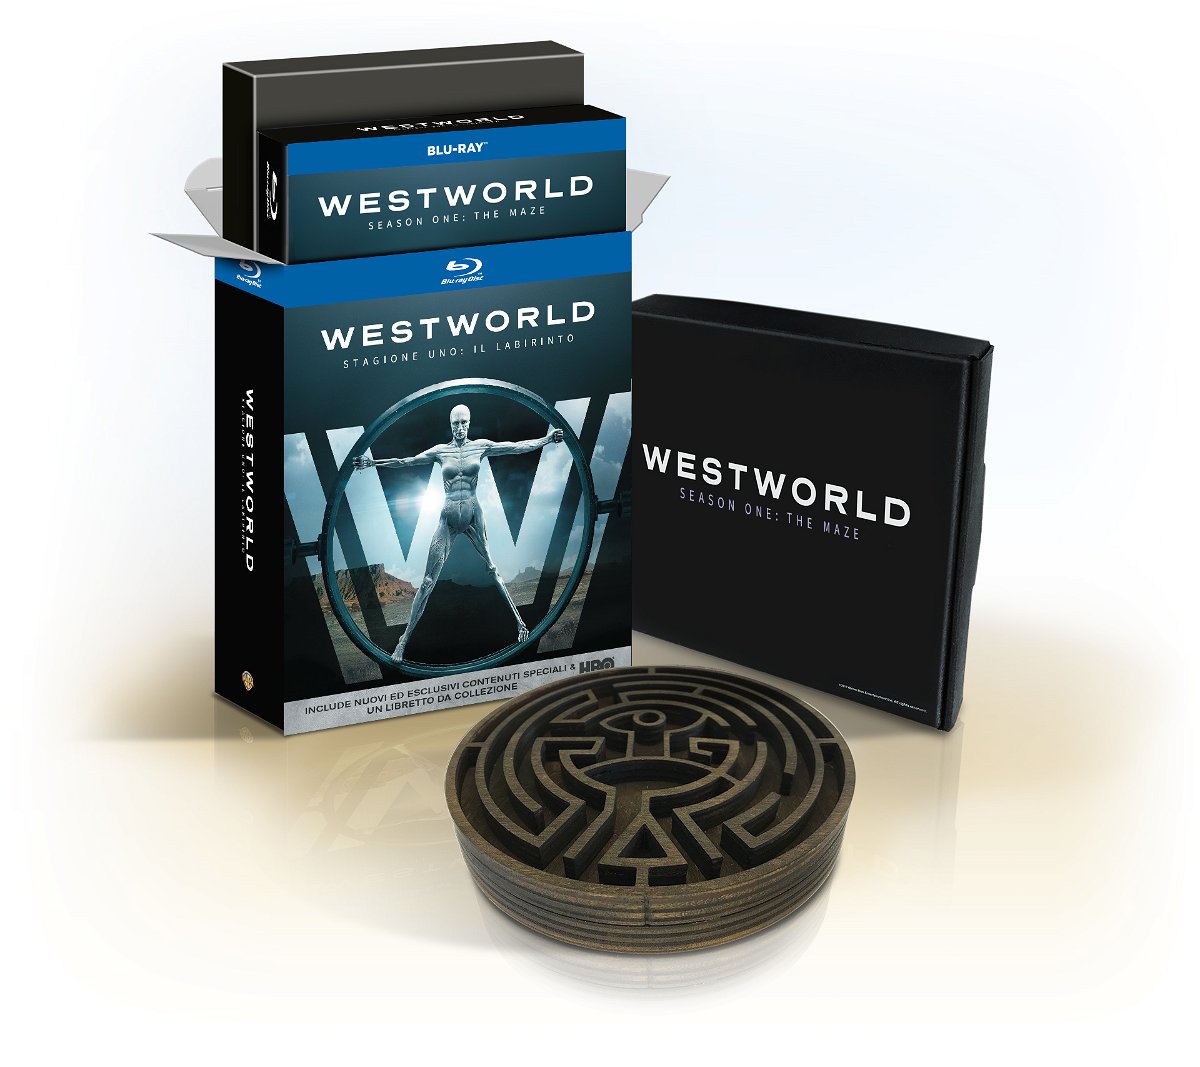 La Maze Edition della stagione 1 di Westworld